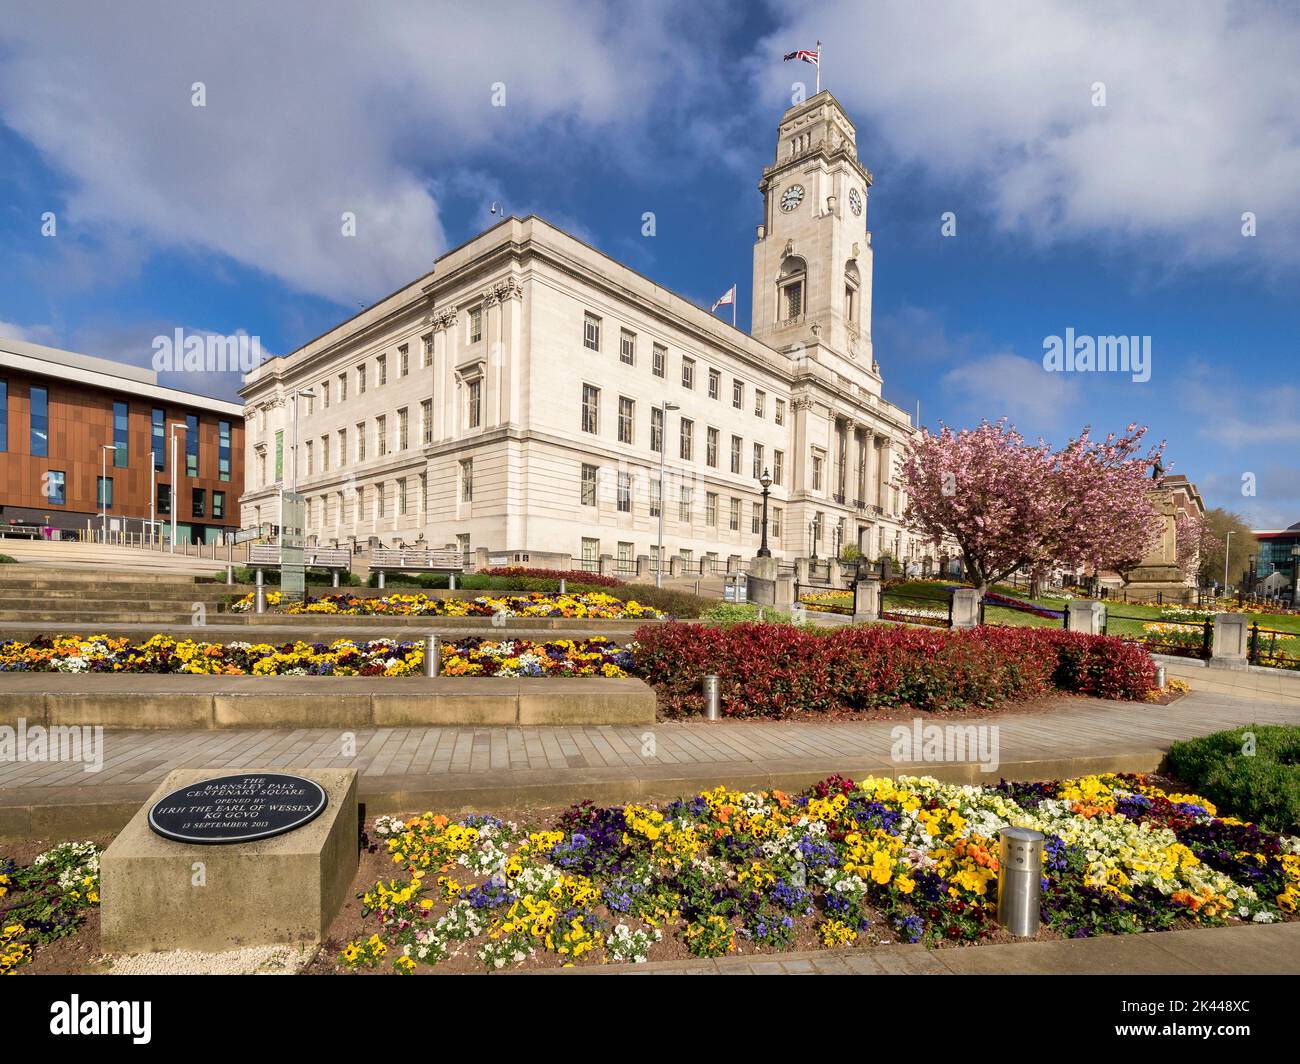 24 de abril de 2022: Barnsley, South Yorkshire, Reino Unido - Ayuntamiento de Barnsley en una buena mañana de primavera. La Plaza Centenaria de Barnsley Pals conmemora localmente. Foto de stock